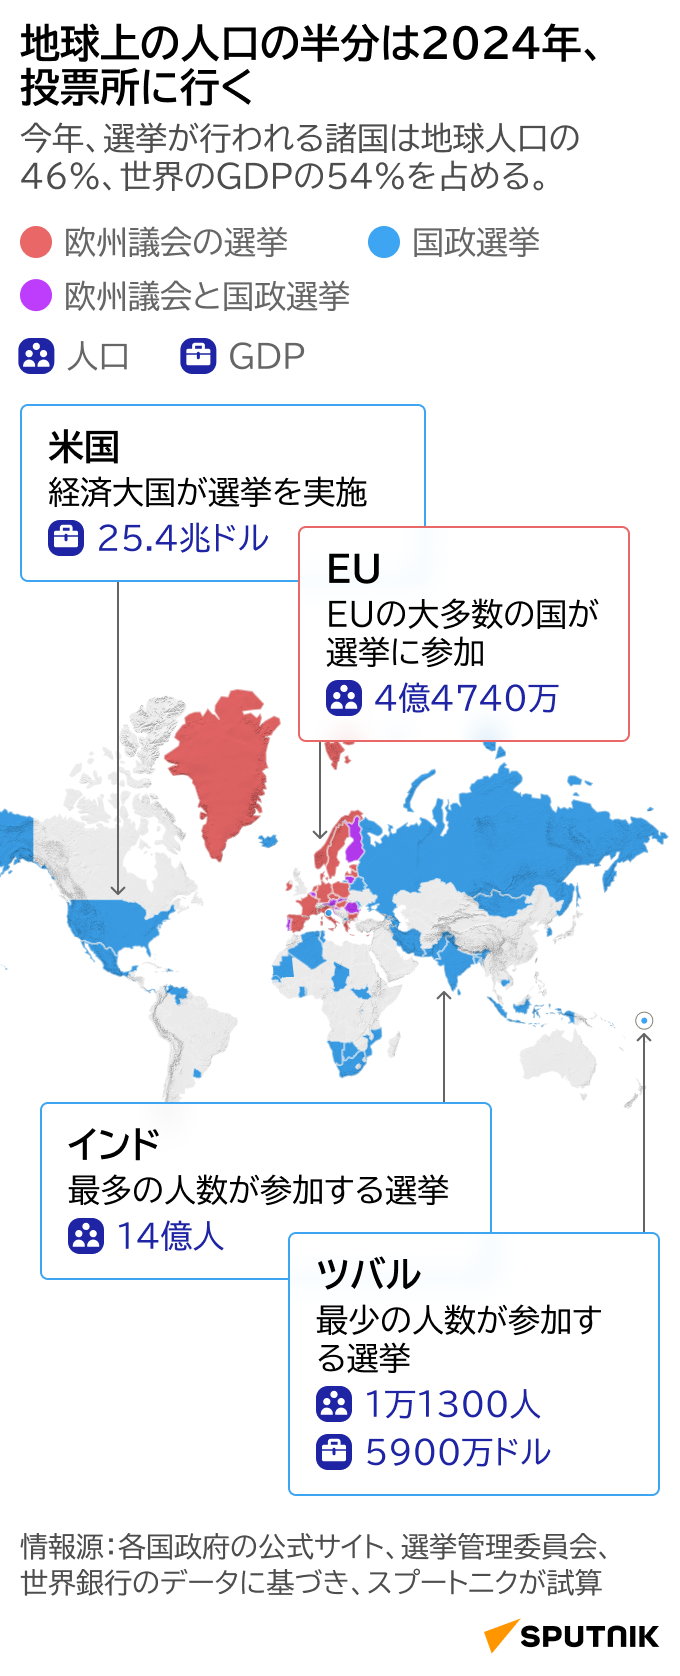 2024年に世界で実施される選挙 - Sputnik 日本